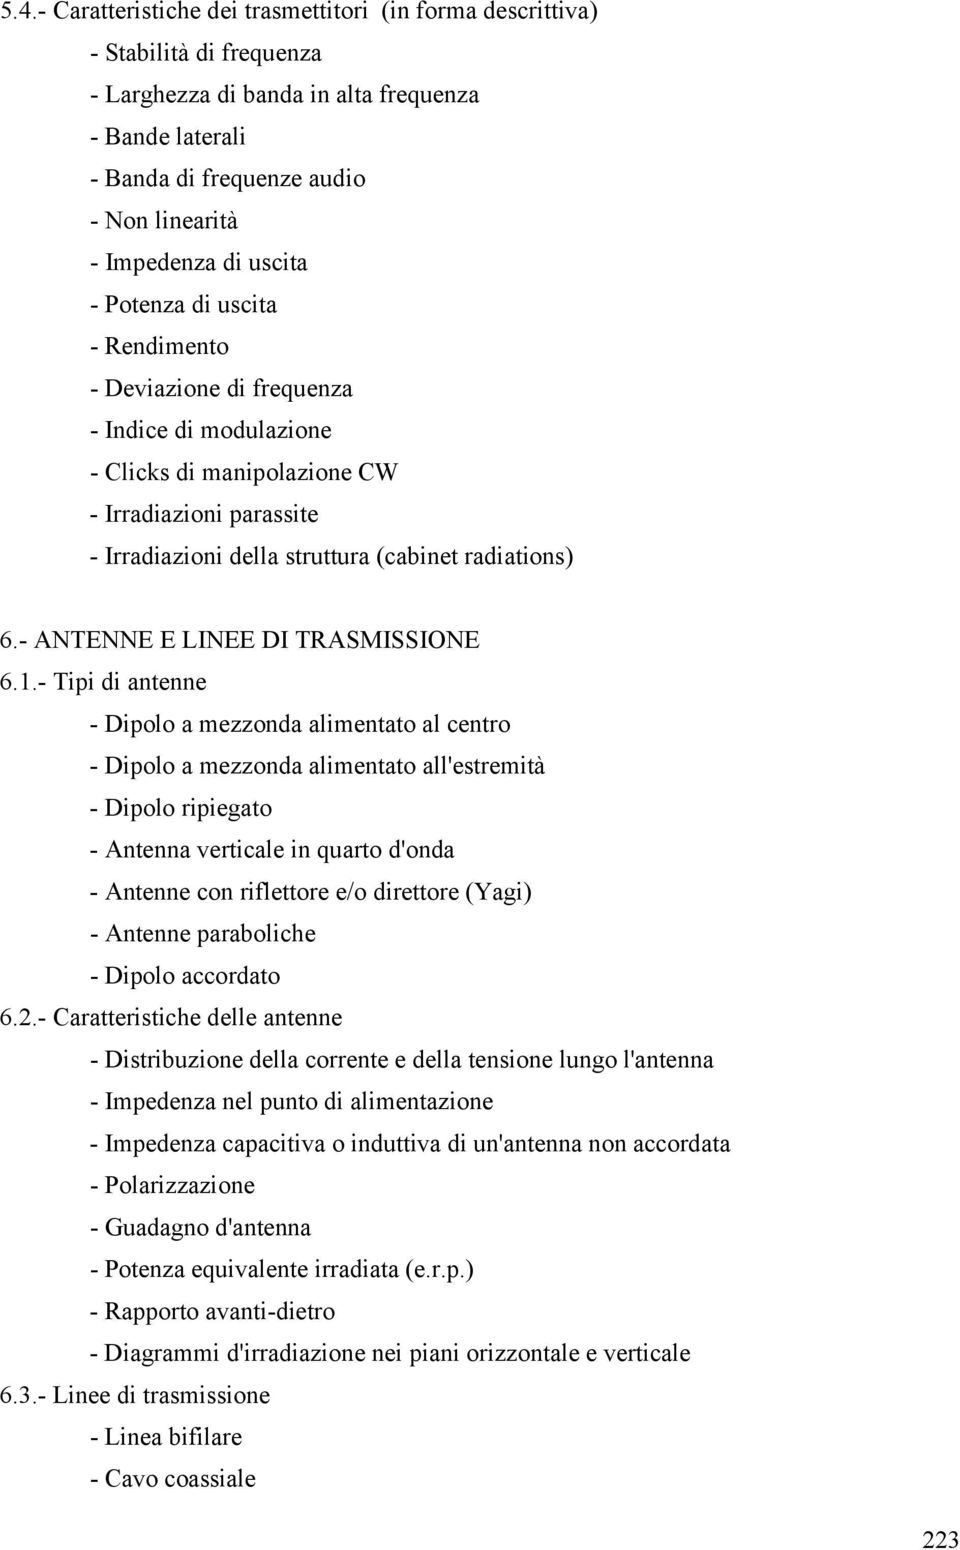 6.- ANTENNE E LINEE DI TRASMISSIONE 6.1.